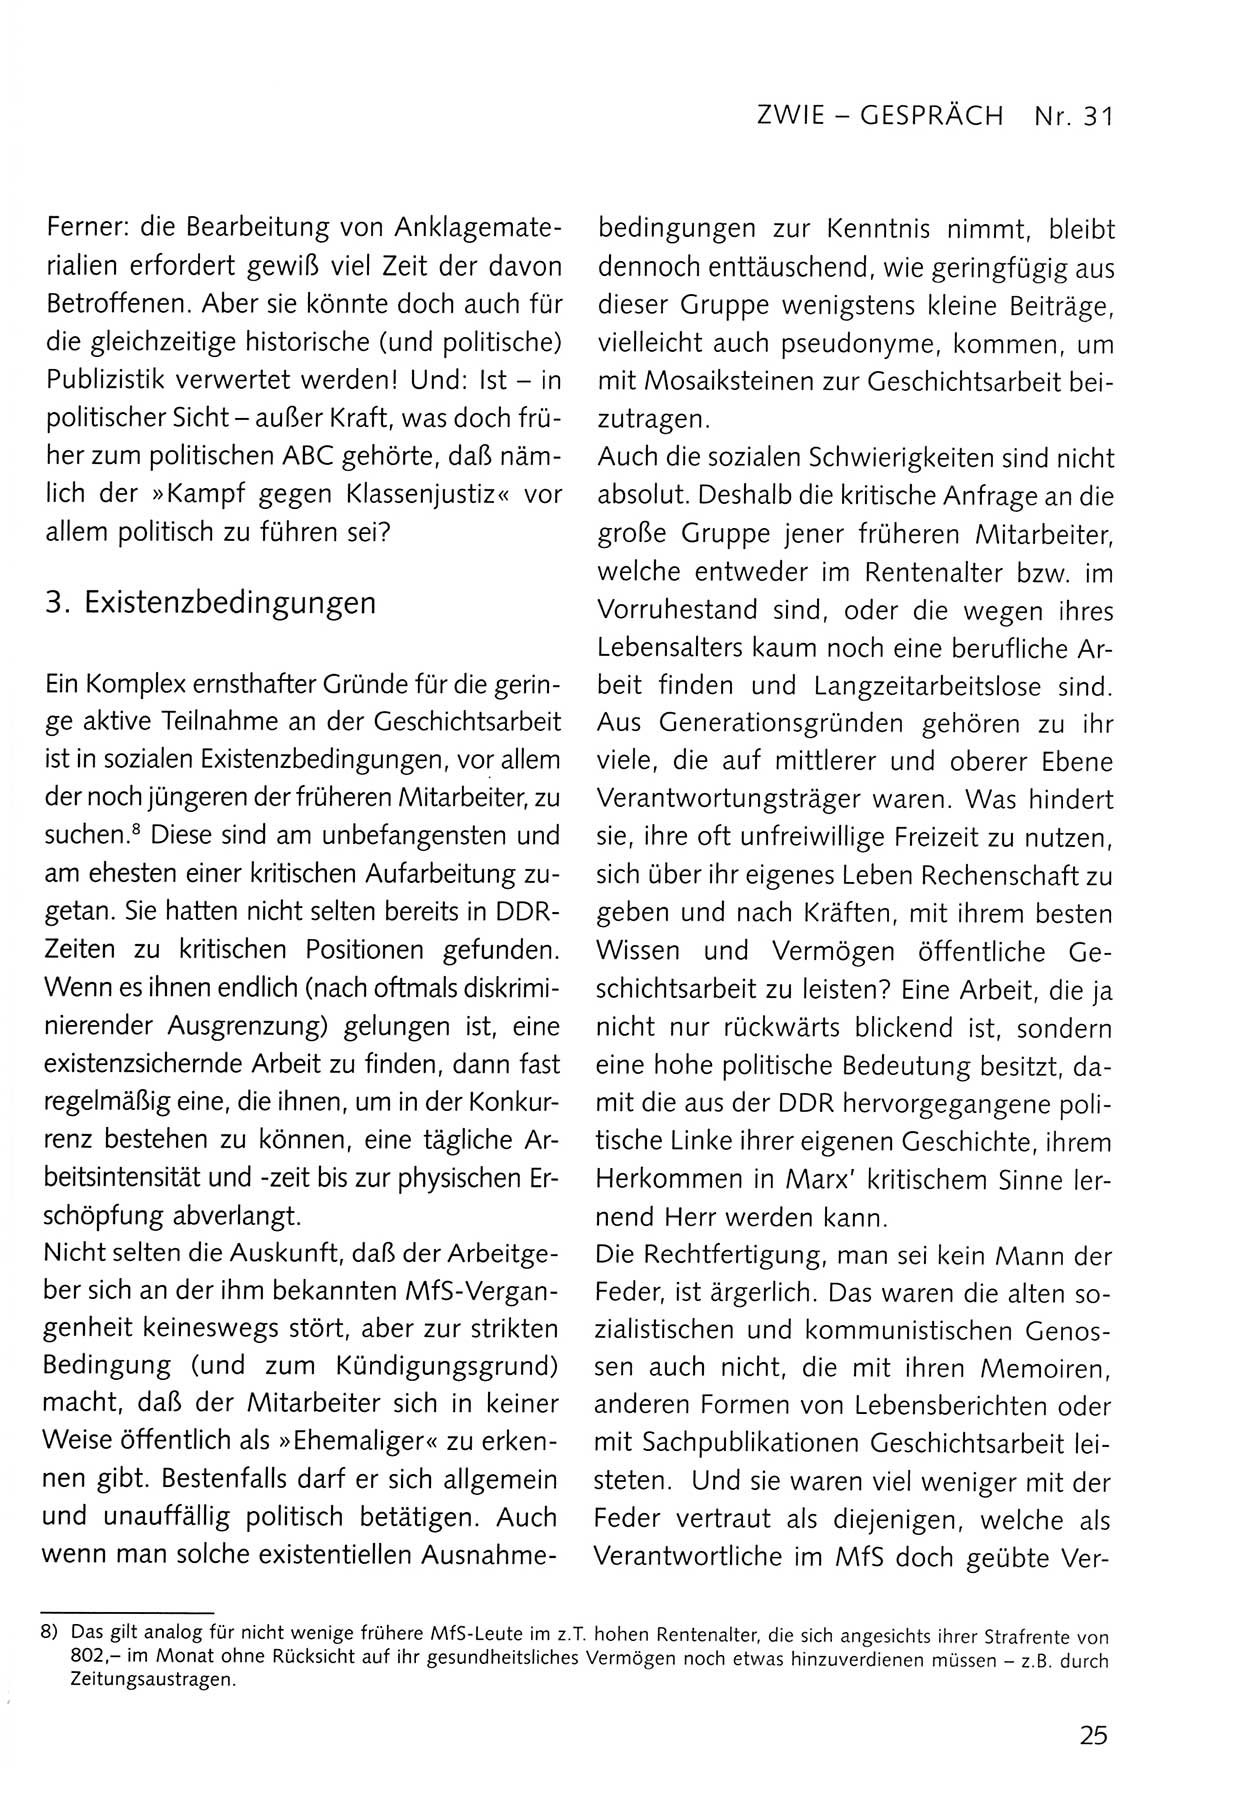 Zwie-Gespräch, Beiträge zum Umgang mit der Staatssicherheits-Vergangenheit [Deutsche Demokratische Republik (DDR)], Ausgabe Nr. 31, Berlin 1995, Seite 25 (Zwie-Gespr. Ausg. 31 1995, S. 25)